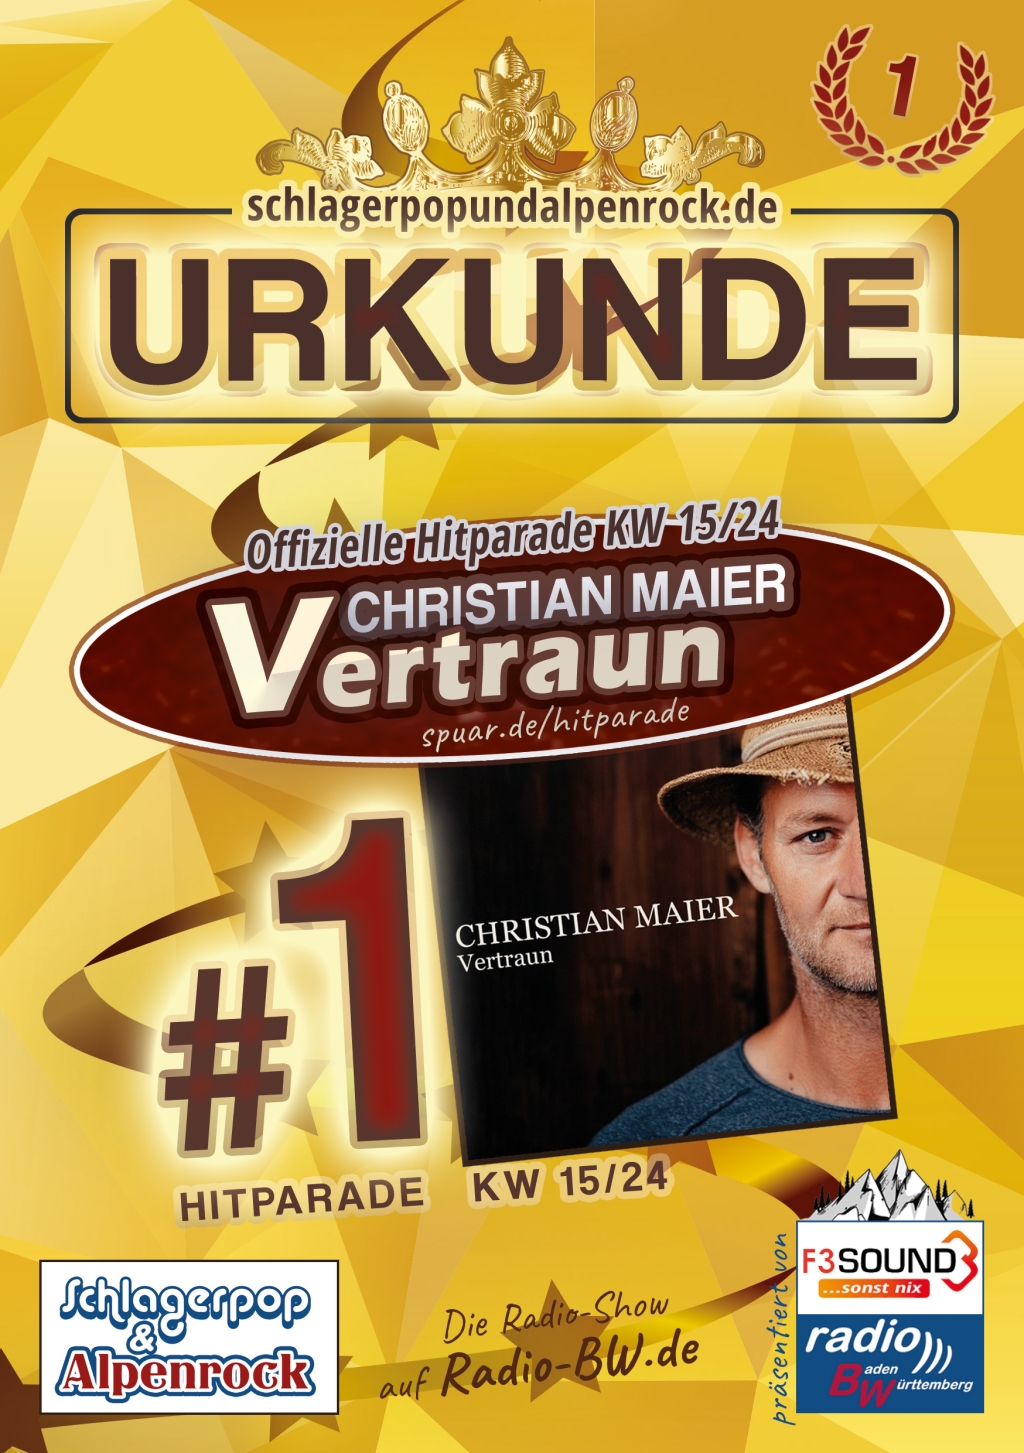 URKUNDE - Offizielle Hitparade KW 15/24